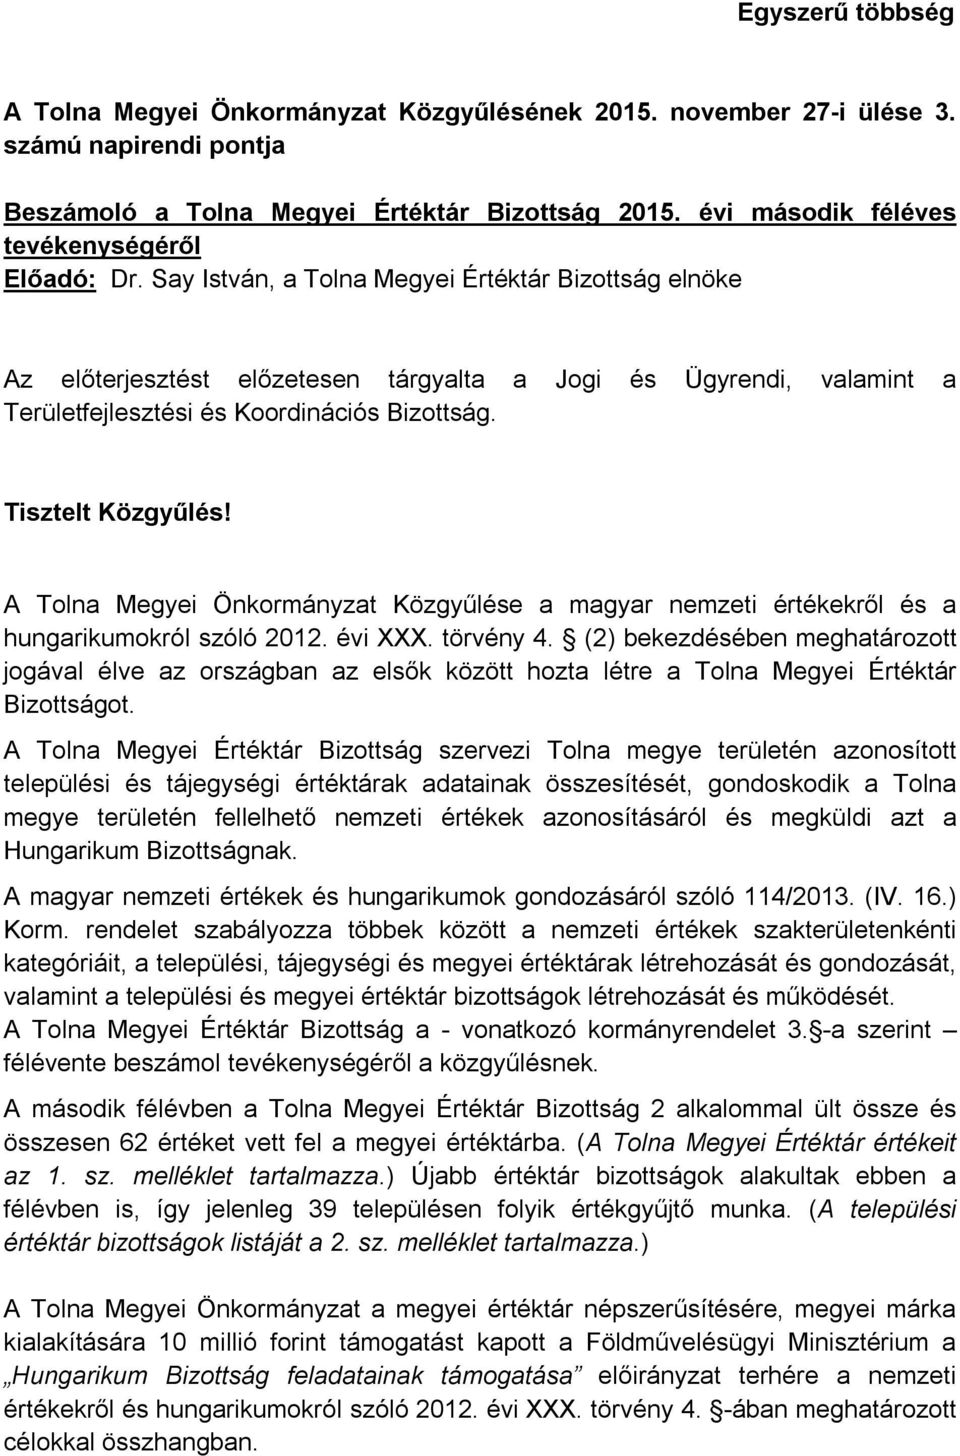 A Tolna Megyei Önkormányzat Közgyűlése a magyar nemzeti értékekről és a hungarikumokról szóló 2012. évi XXX. törvény 4.